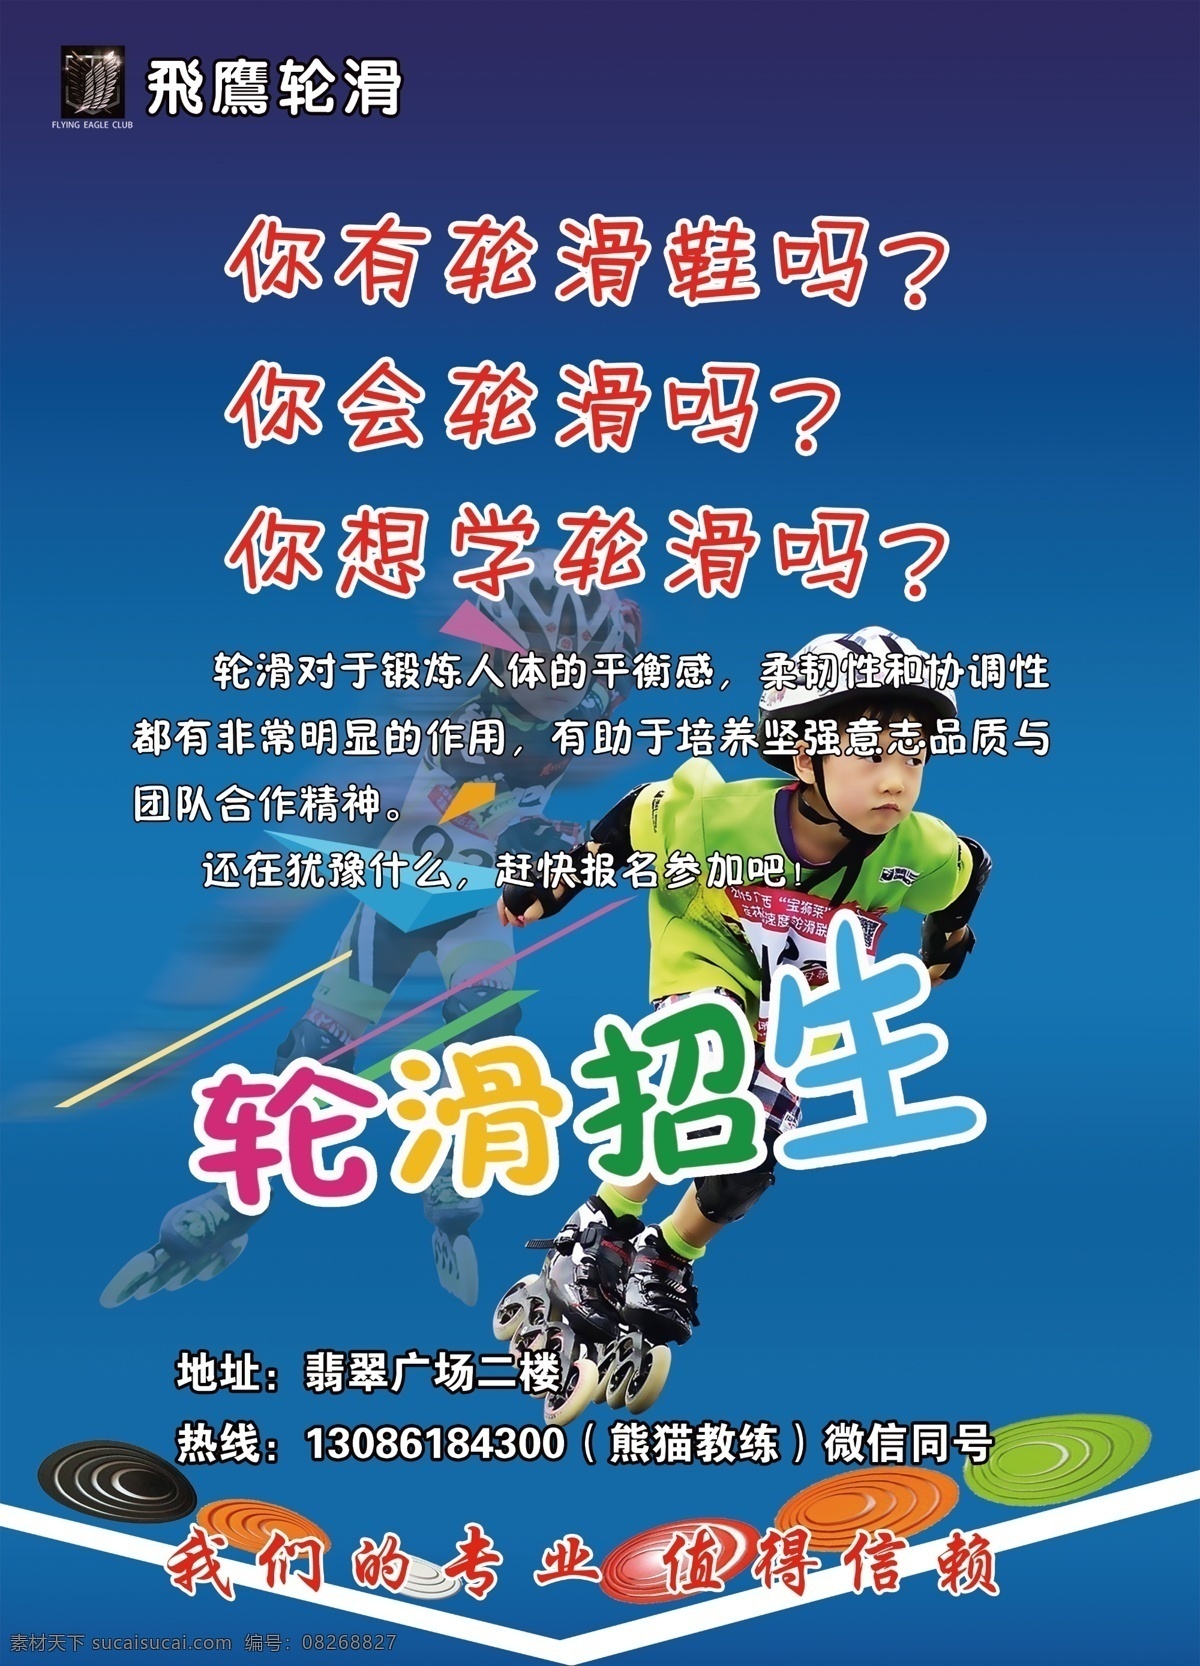 溜冰 轮滑 招生 宣传单 轮滑单页 溜冰单页 轮滑招生 轮滑海报 溜冰海报 溜冰的男孩 轮滑鞋 dm宣传单